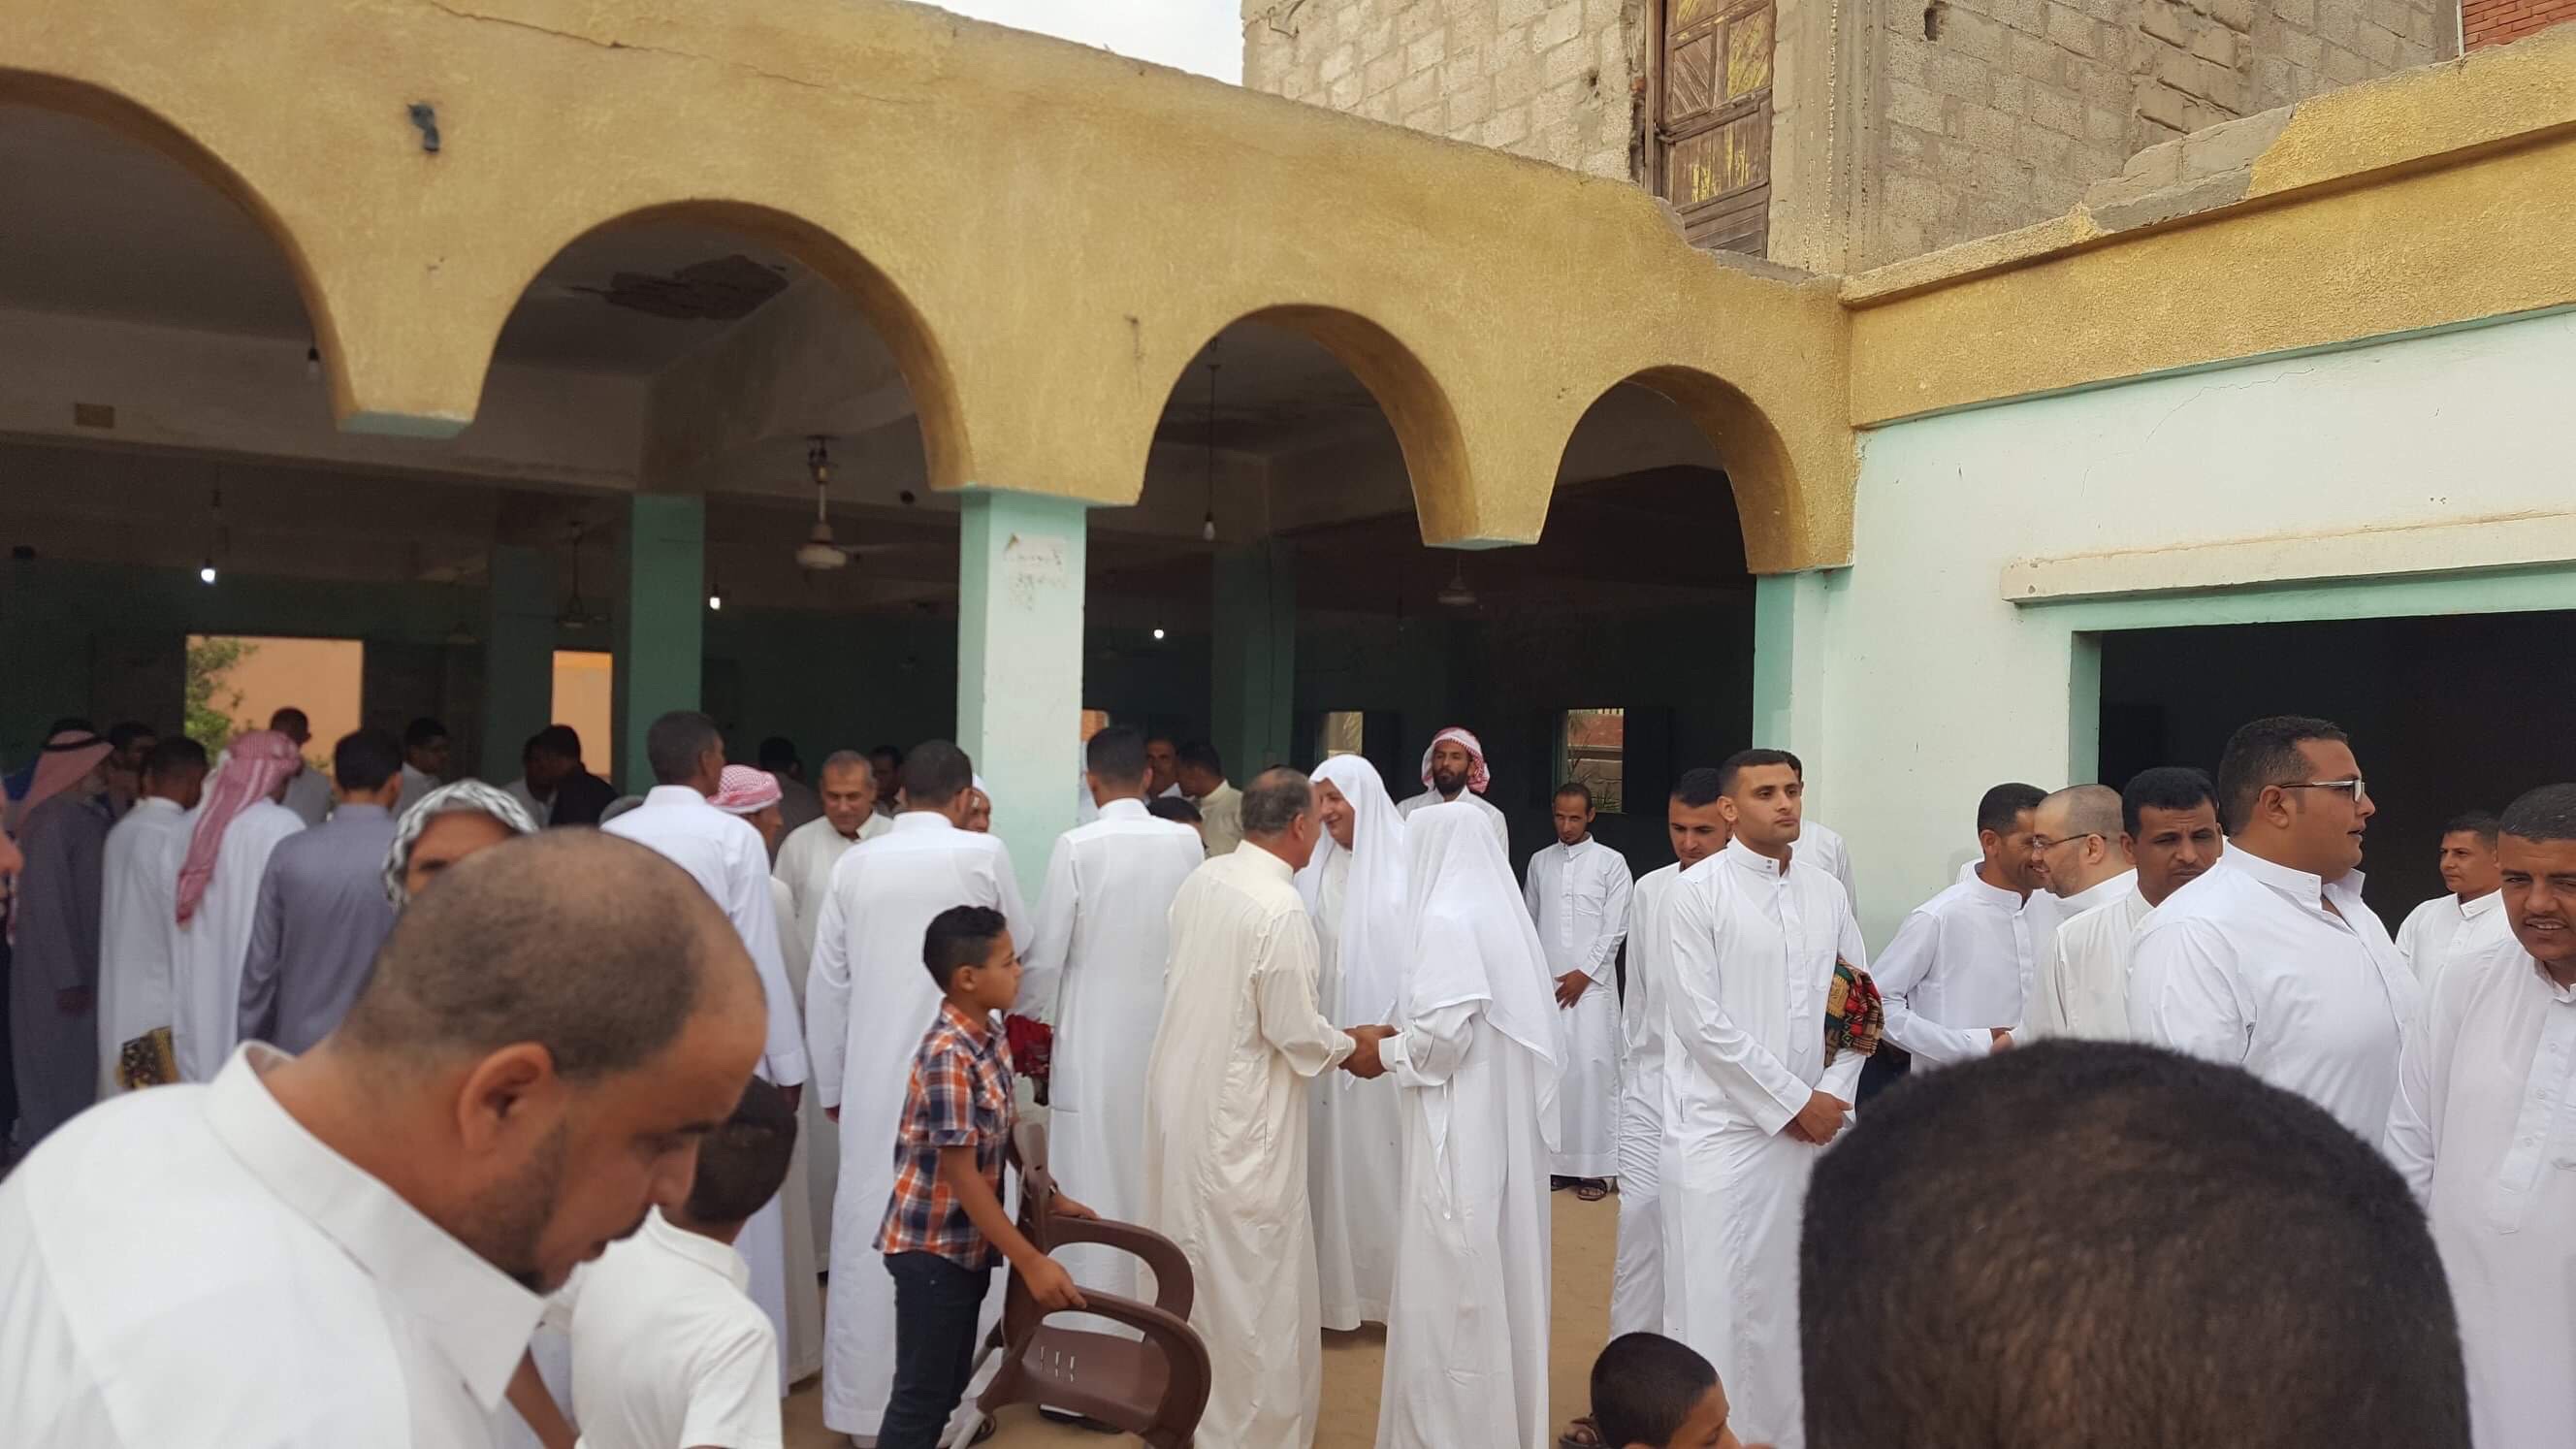 دواوين قبائل سيناء ملتقى يجمع الأقارب والأصدقاء فى احتفالات عيد الفطر (1)